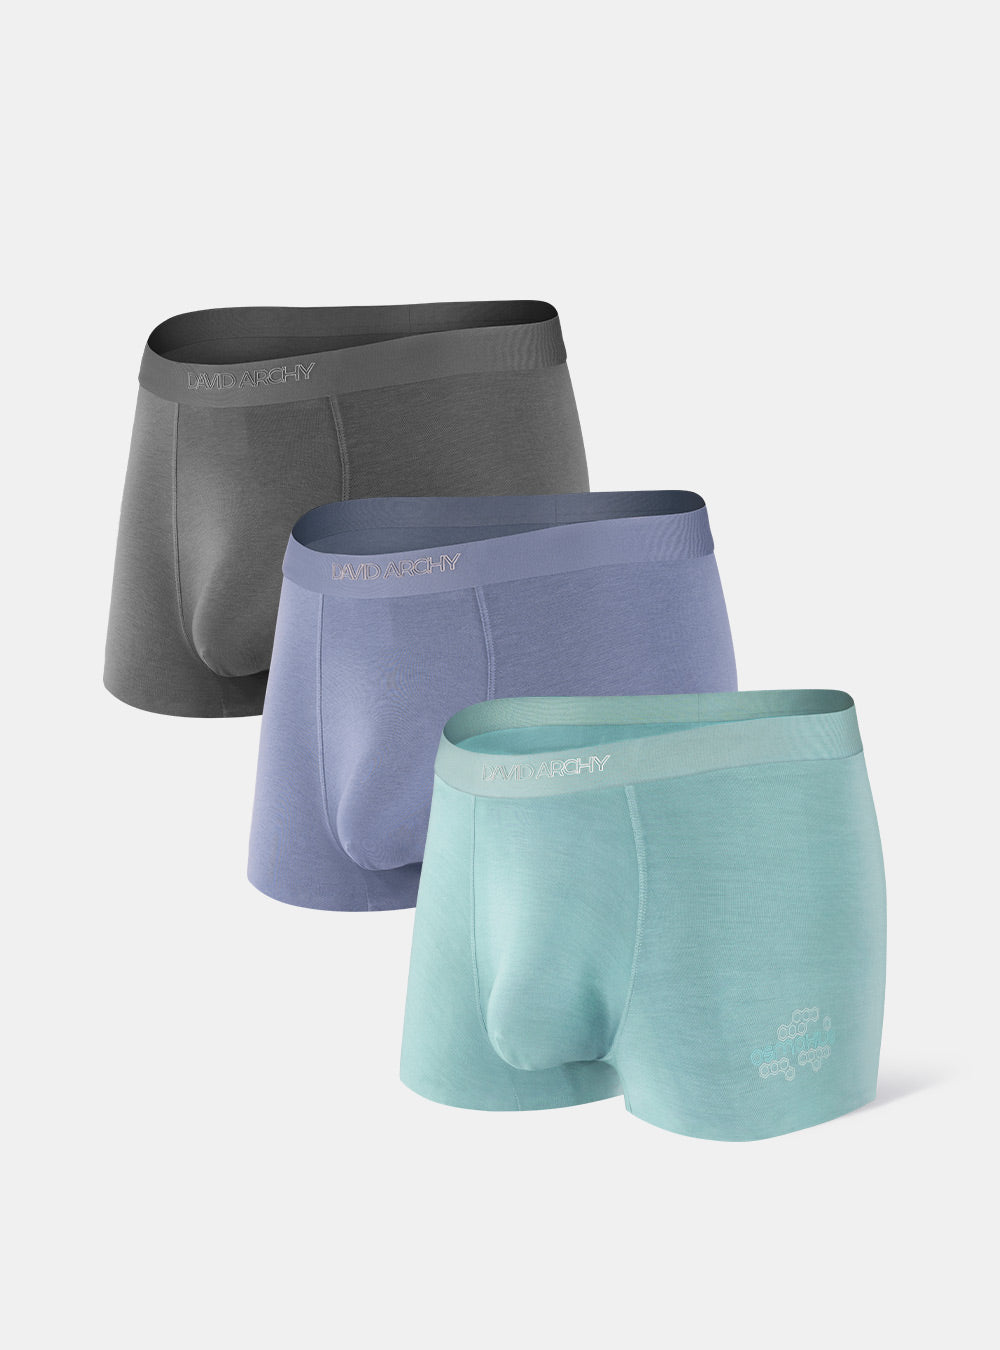 Separatec Men's Dual Pouch Underwear Comfort Soft Premium Cotton Modal  Blend Boxer Briefs 3 Pack